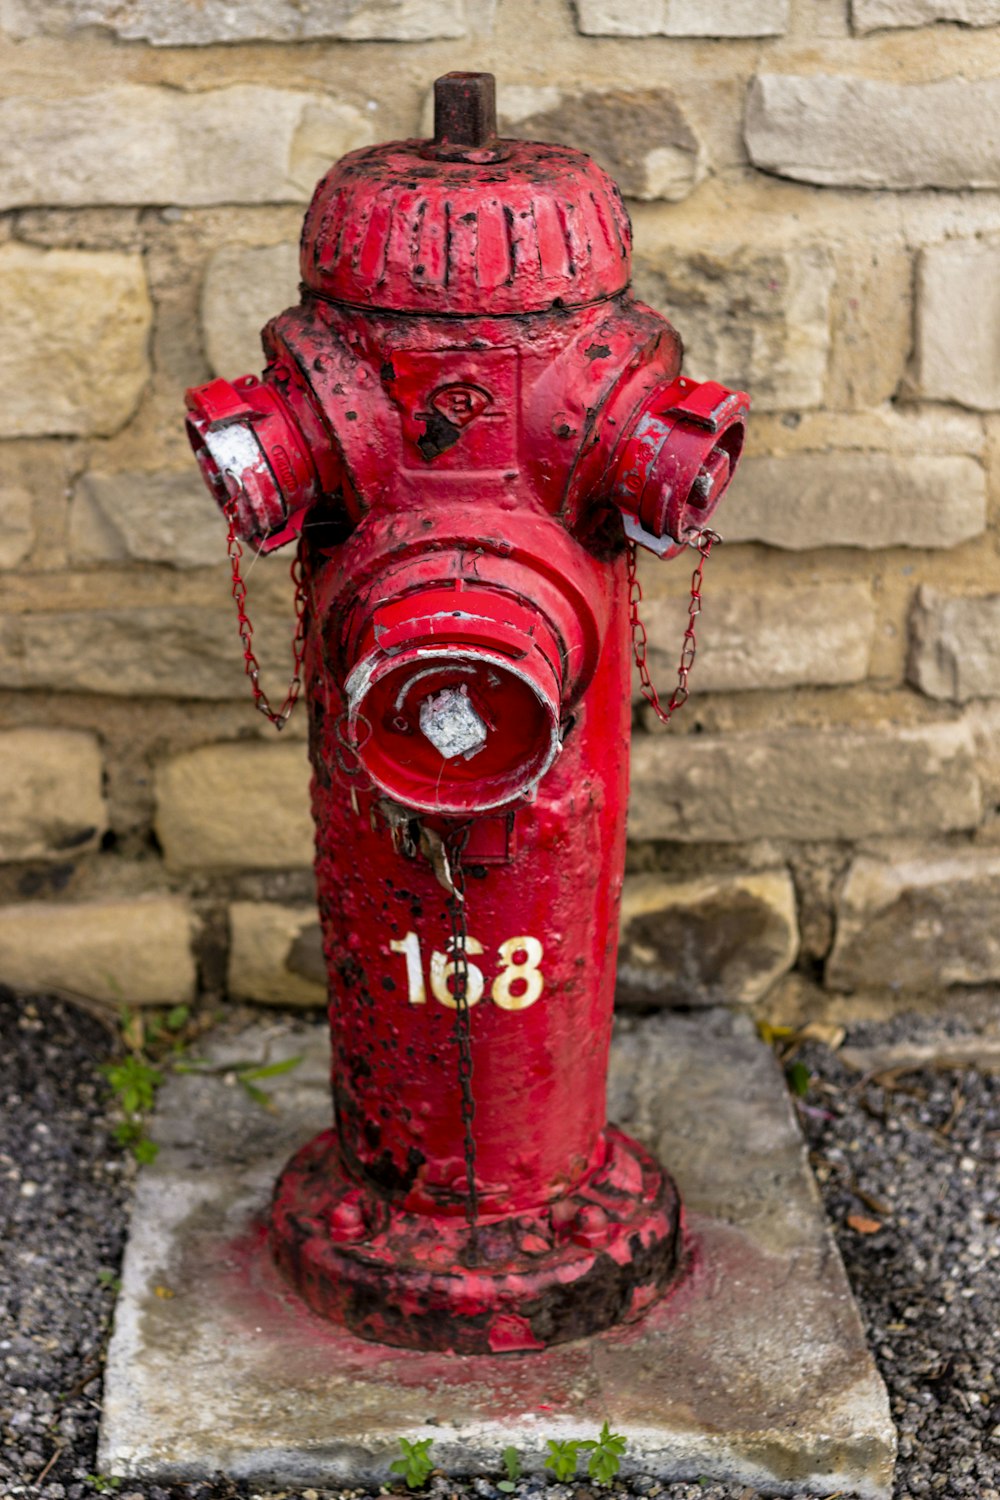 idrante antincendio in metallo rosso 168